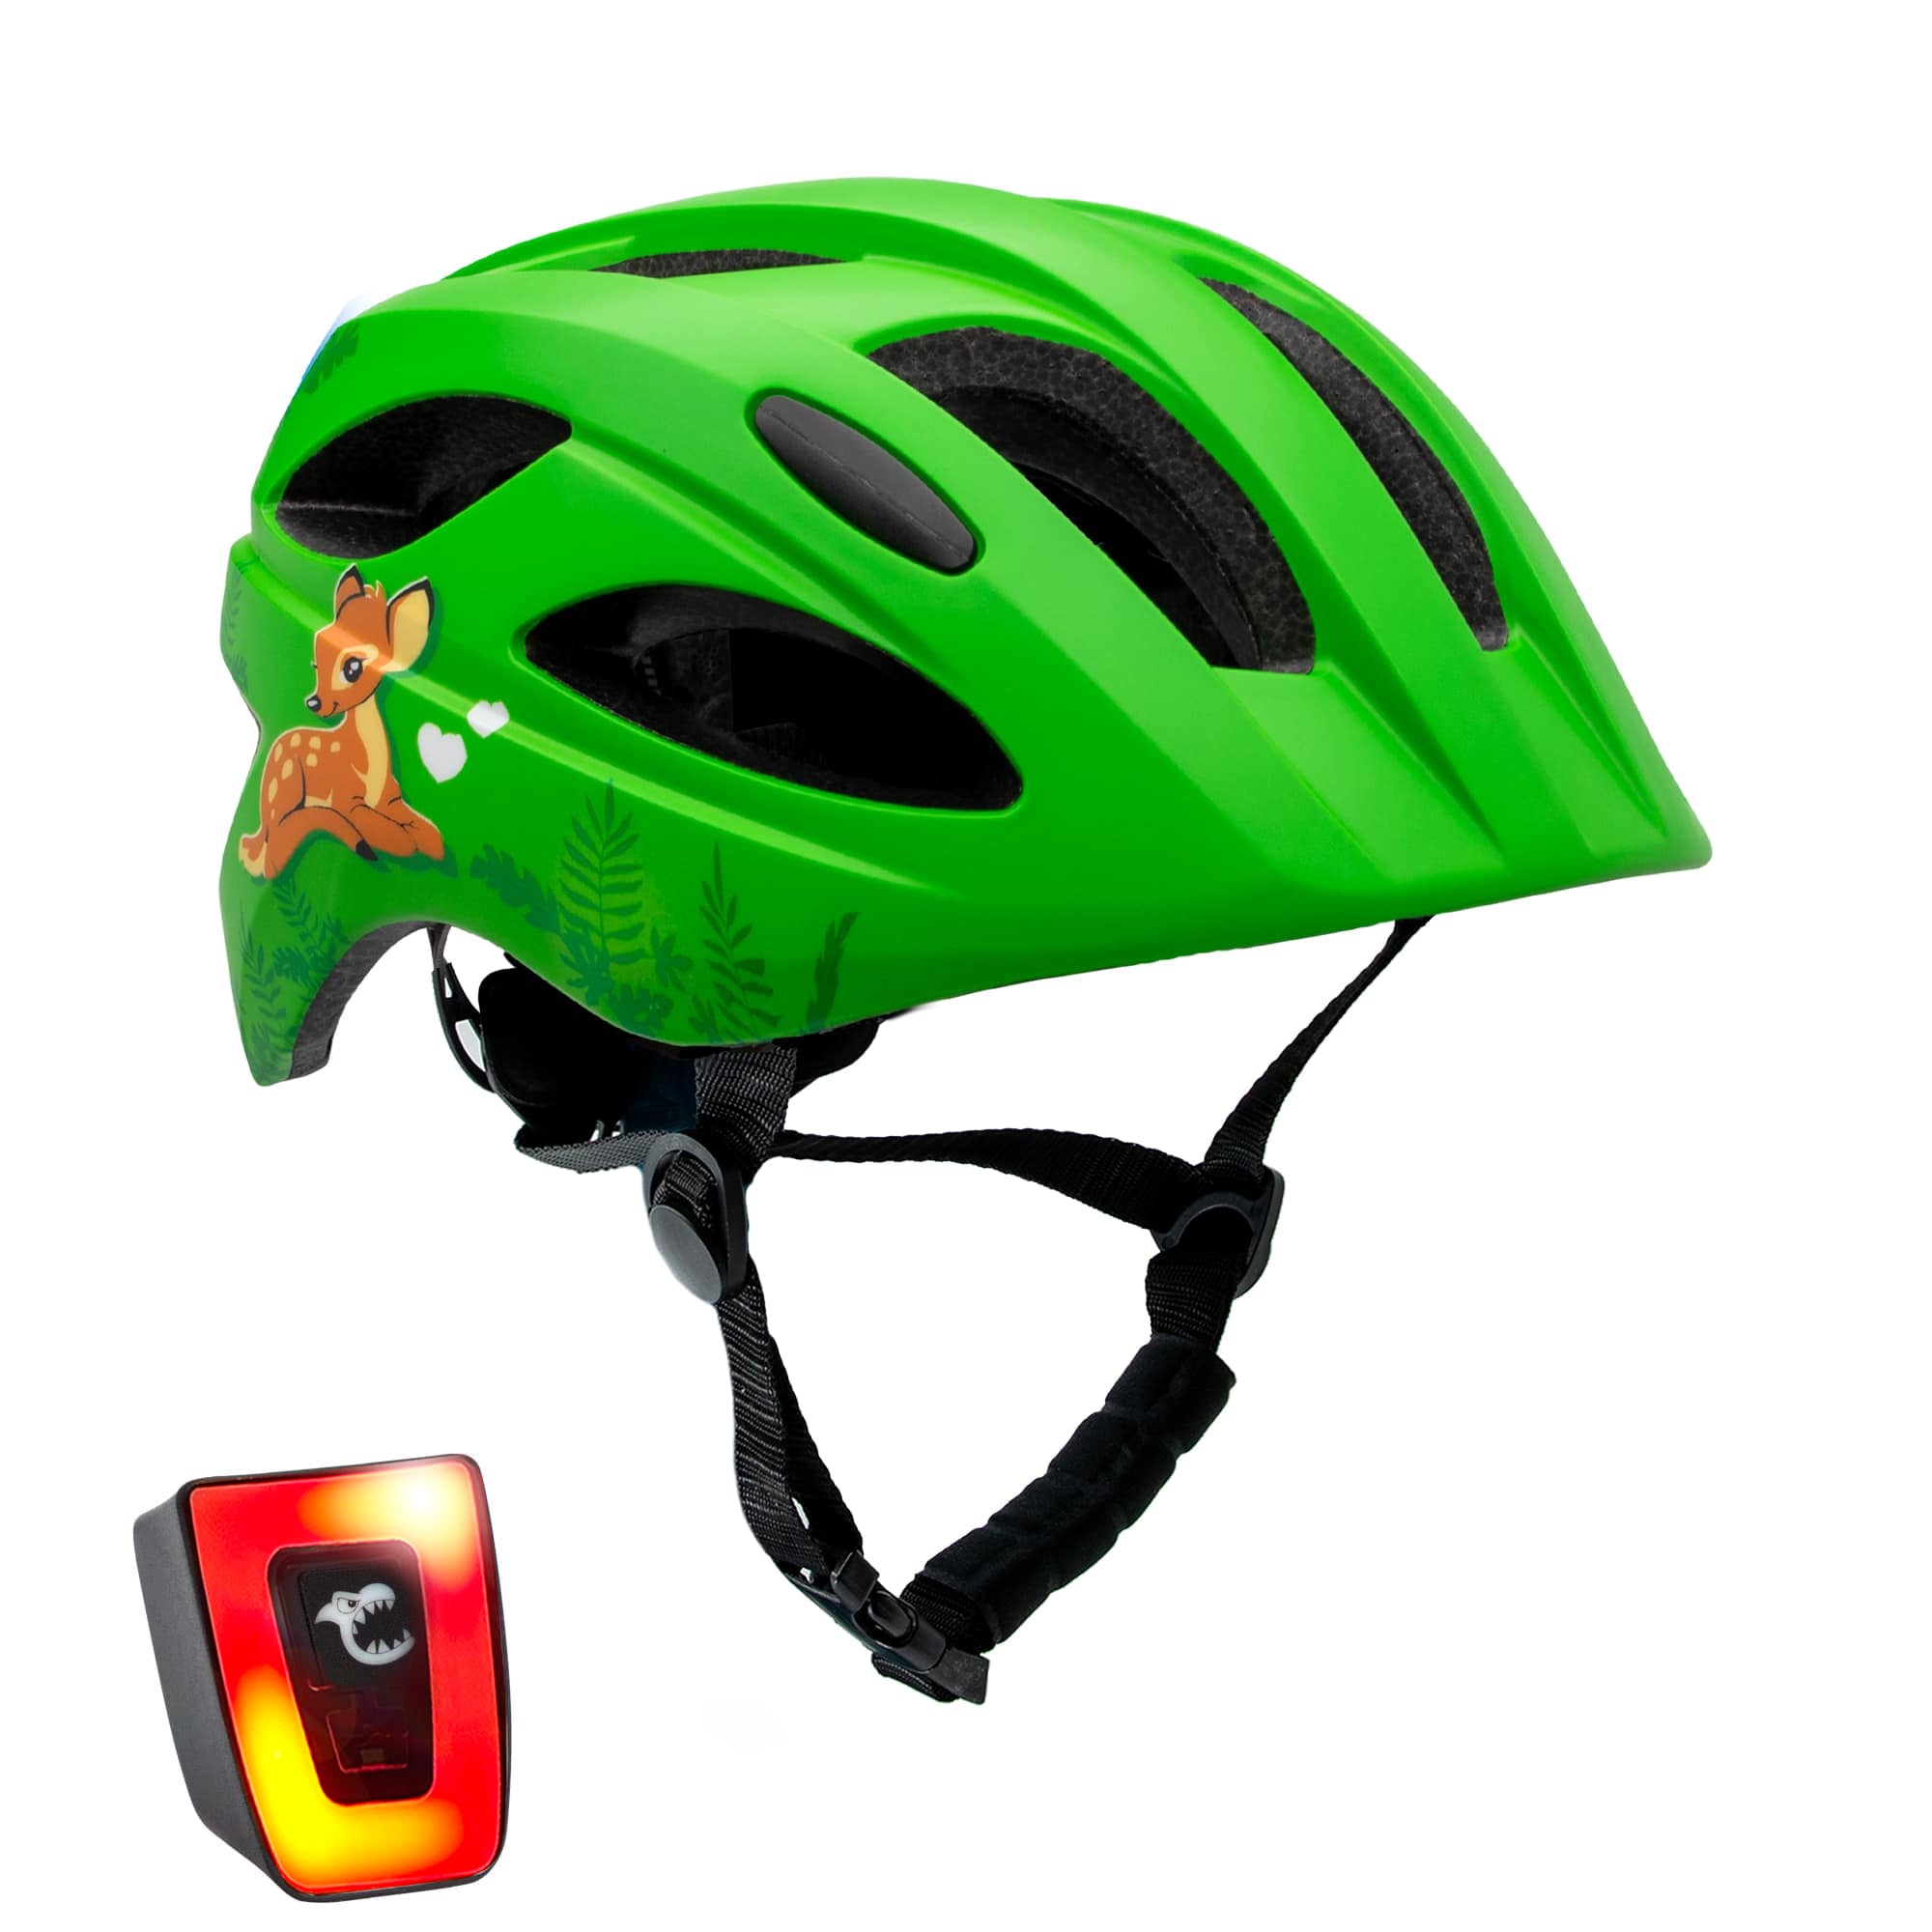 Cute Bicycle Helmet - Green